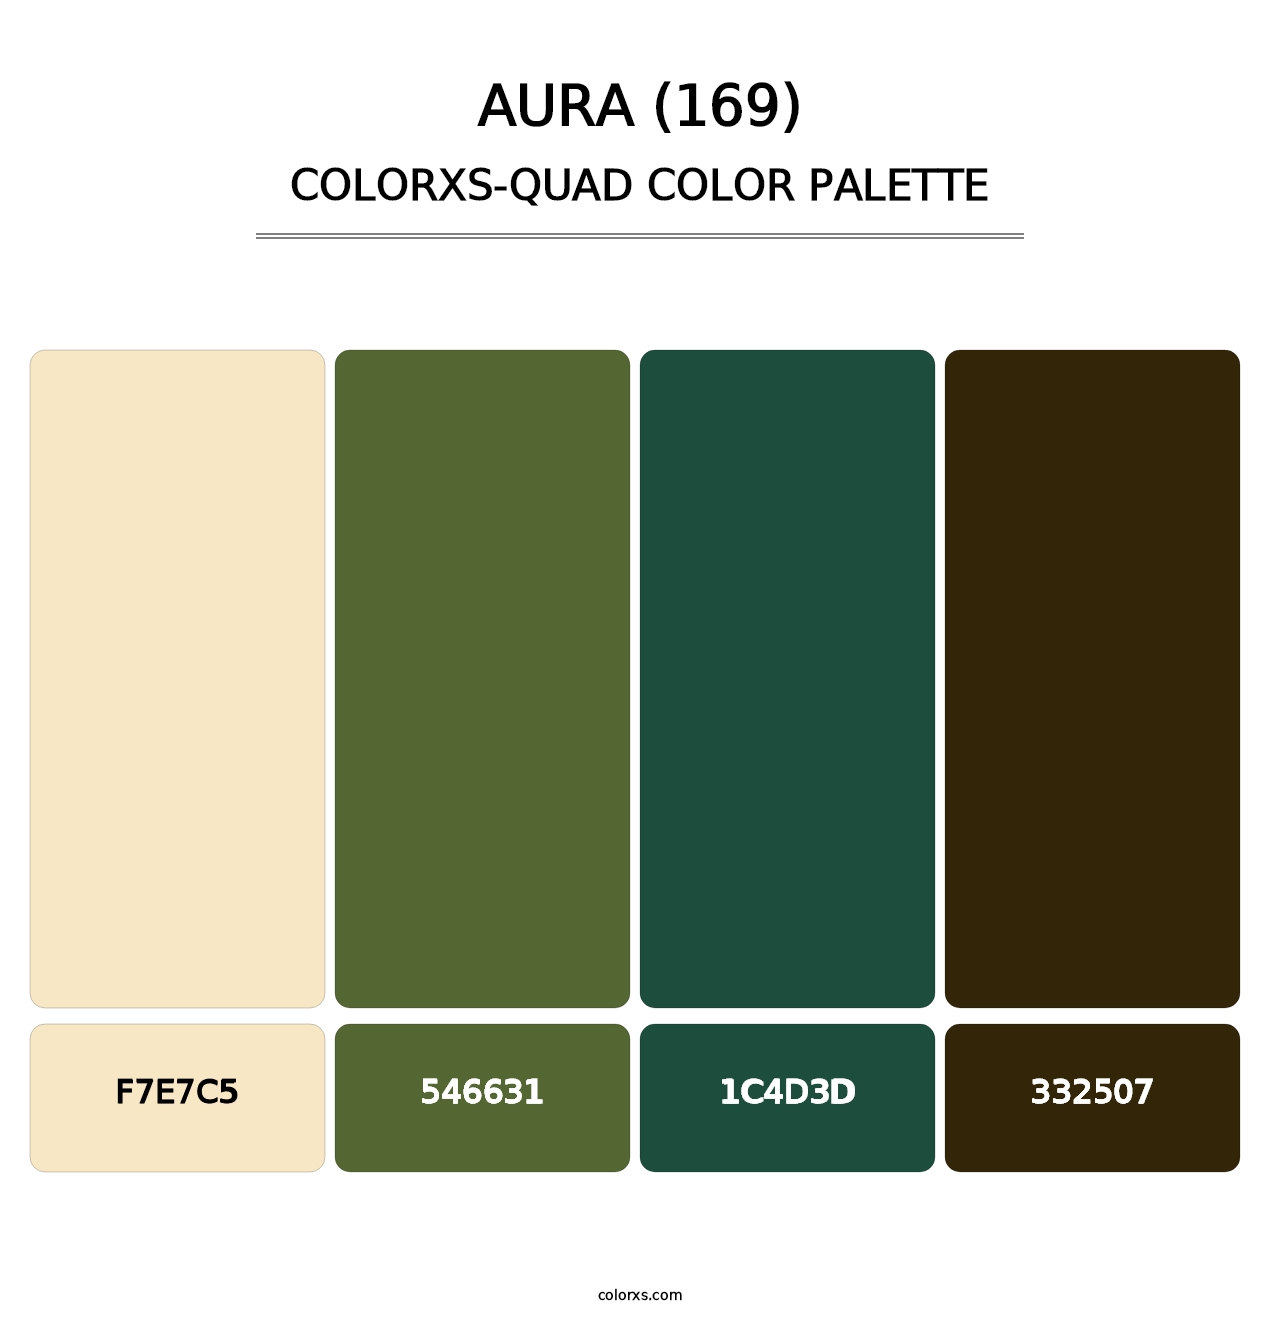 Aura (169) - Colorxs Quad Palette